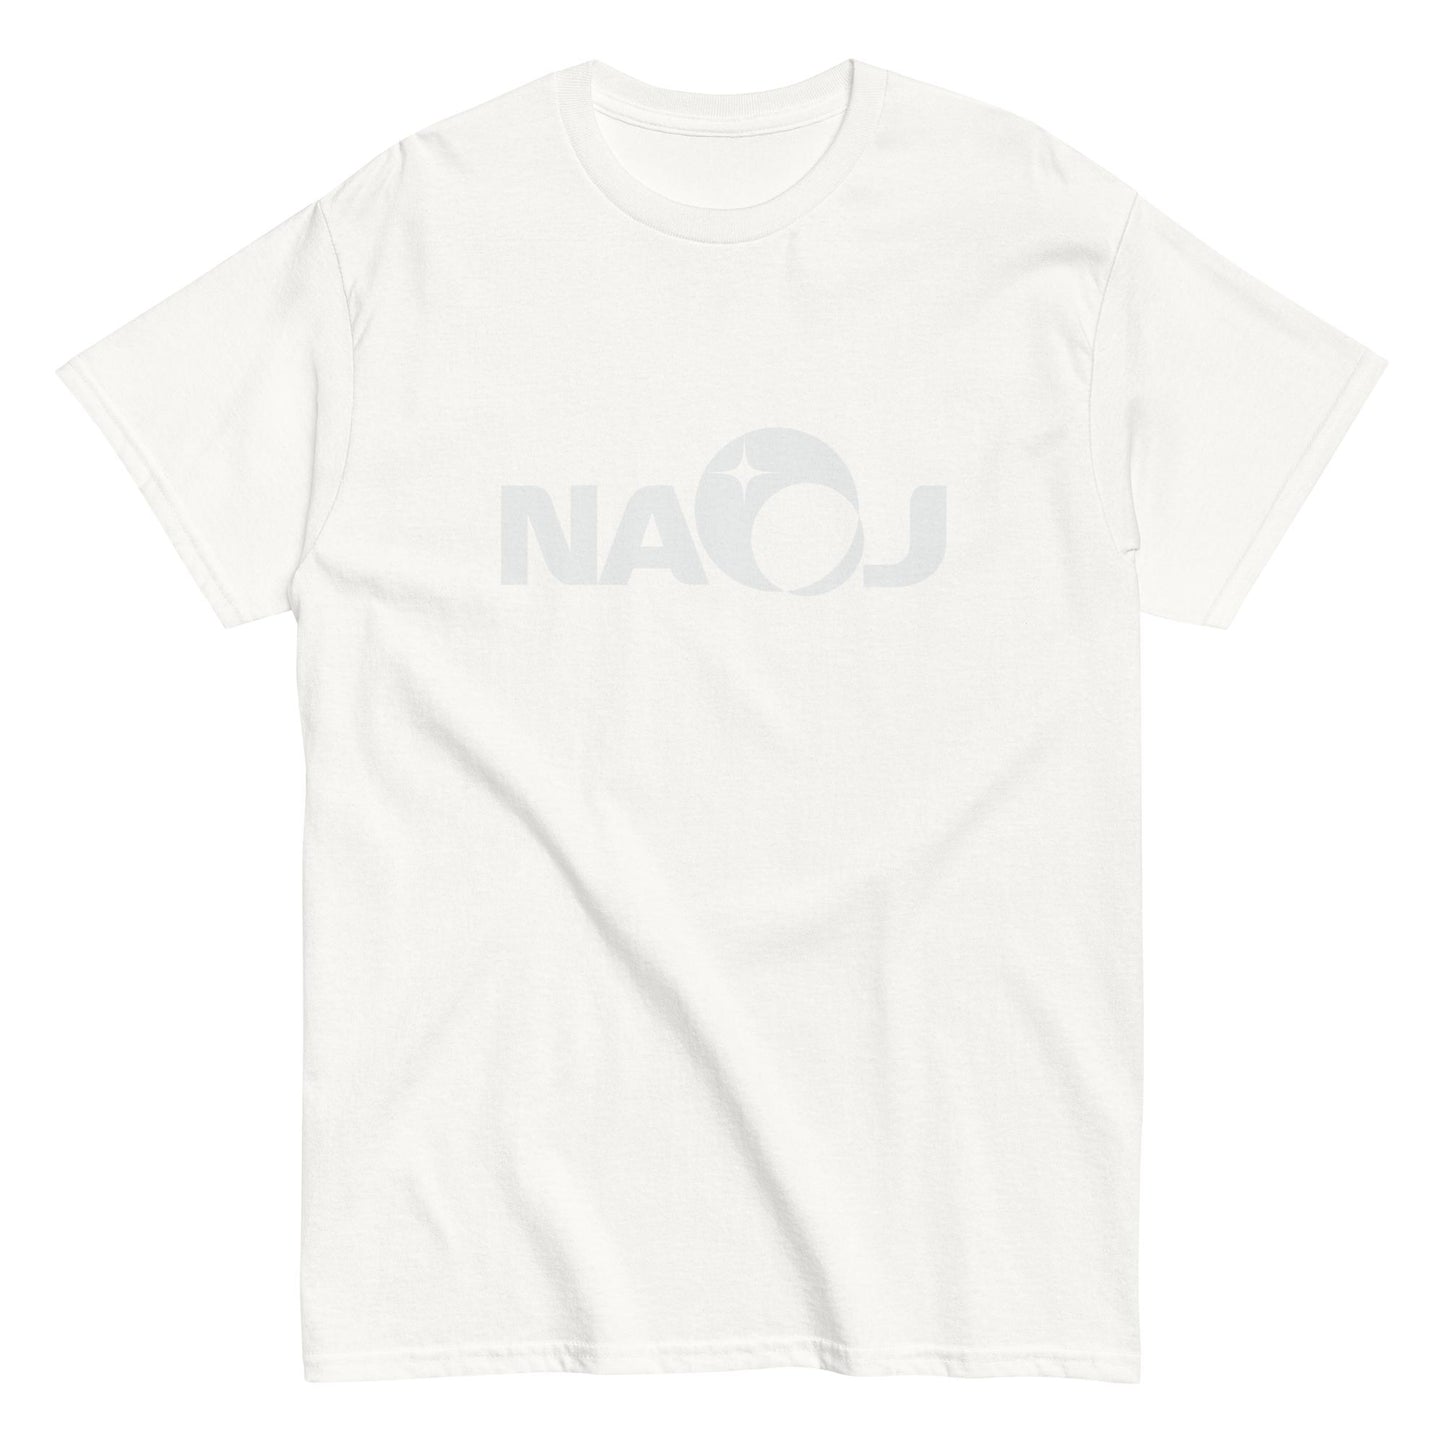 国立天文台 NAOJ ロゴマーク ヘビーウェイト Tシャツ ホワイト x ホワイト S 00